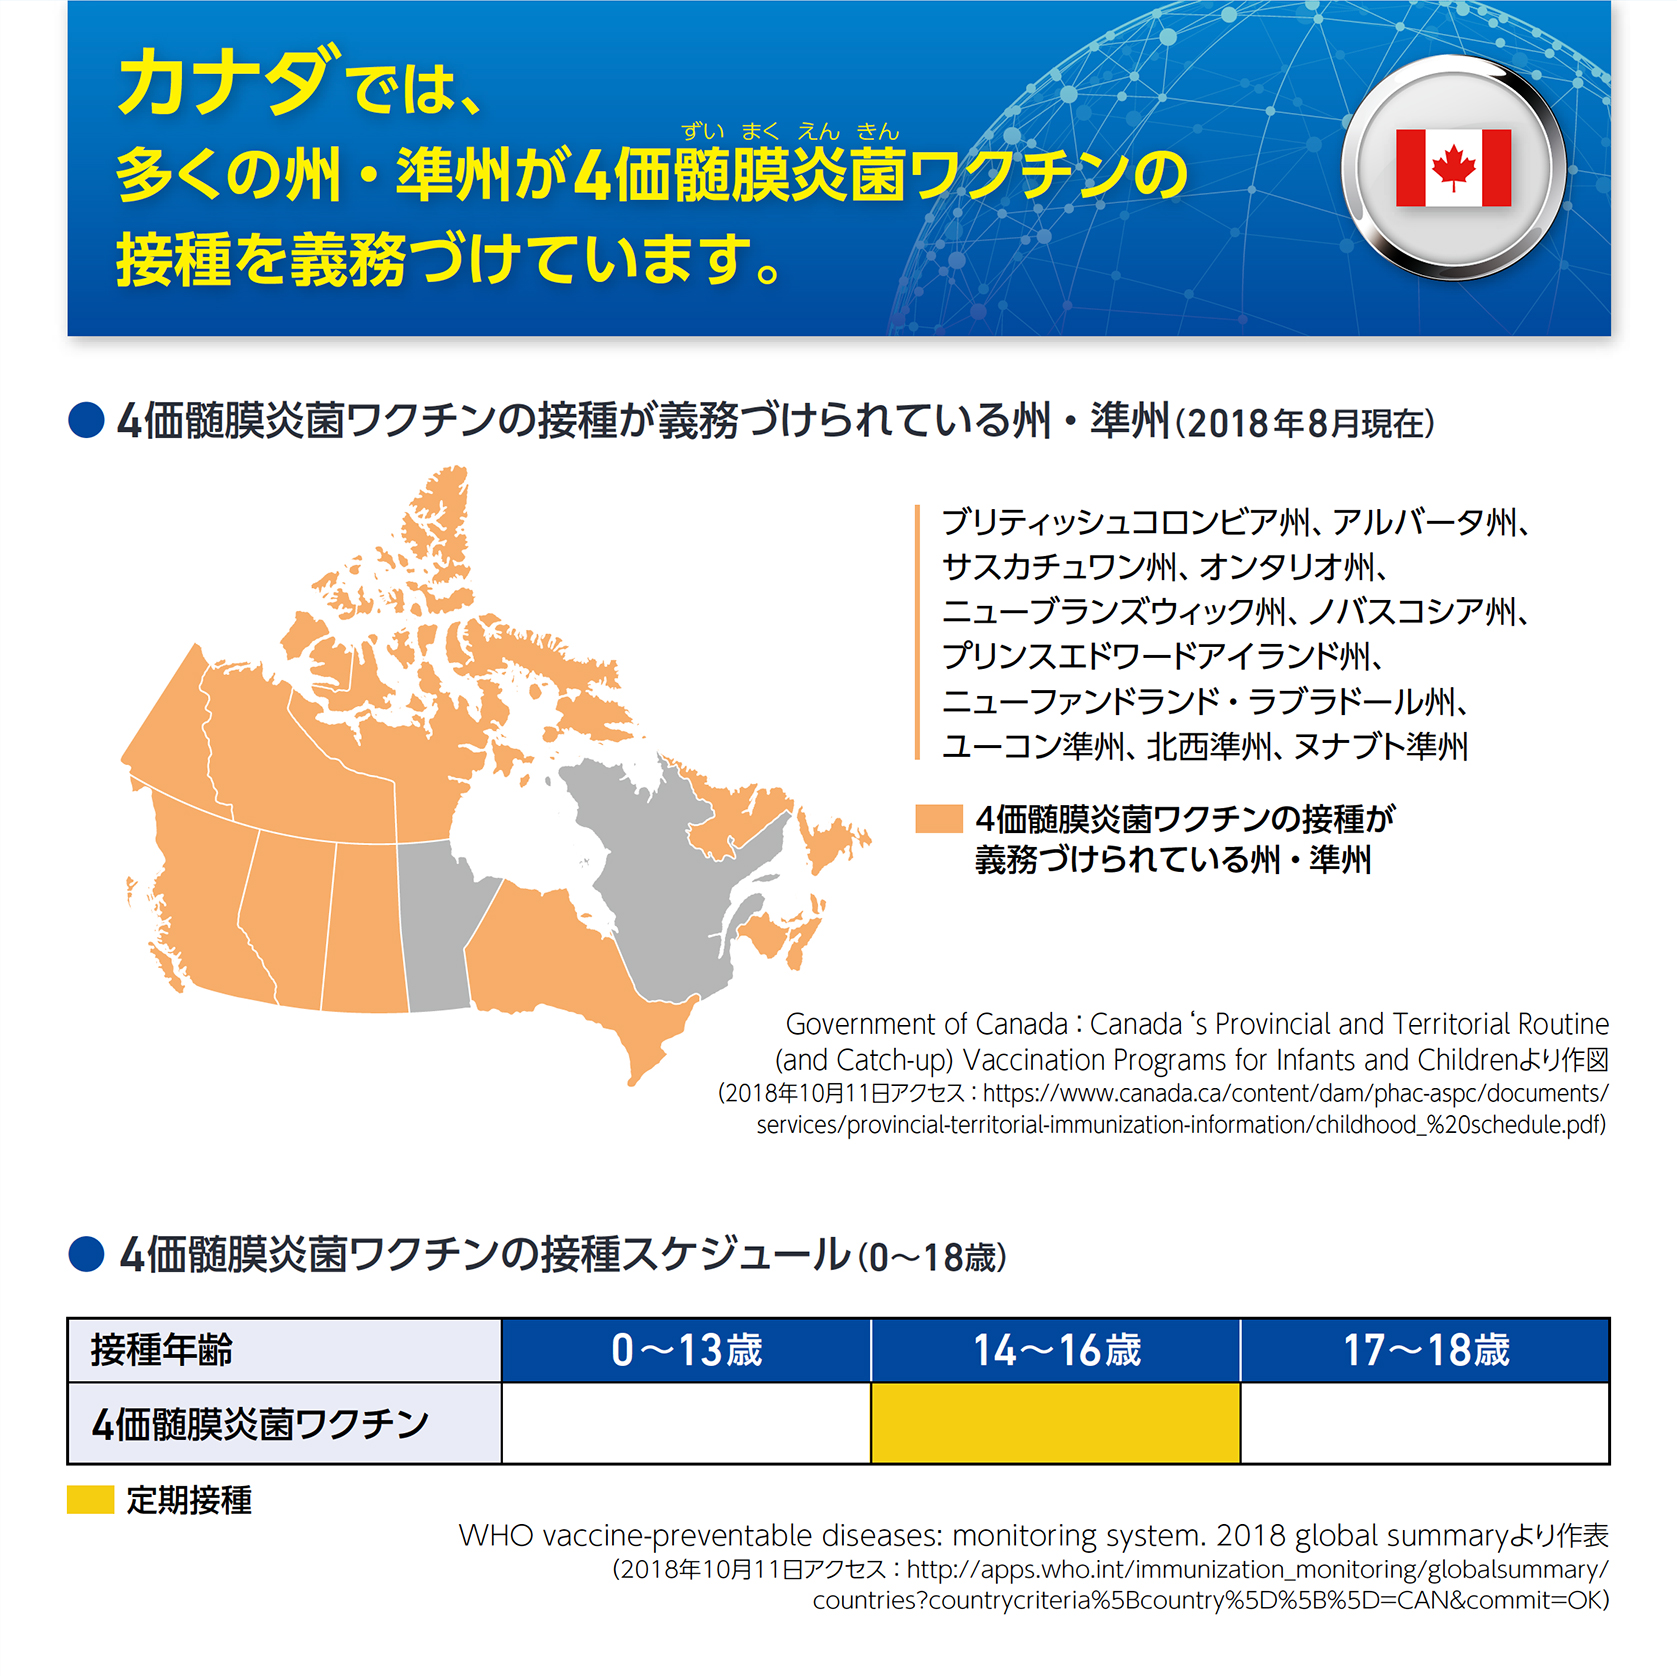 カナダでは、多くの州・準州が4価髄膜炎菌ワクチンの接種を義務づけています。